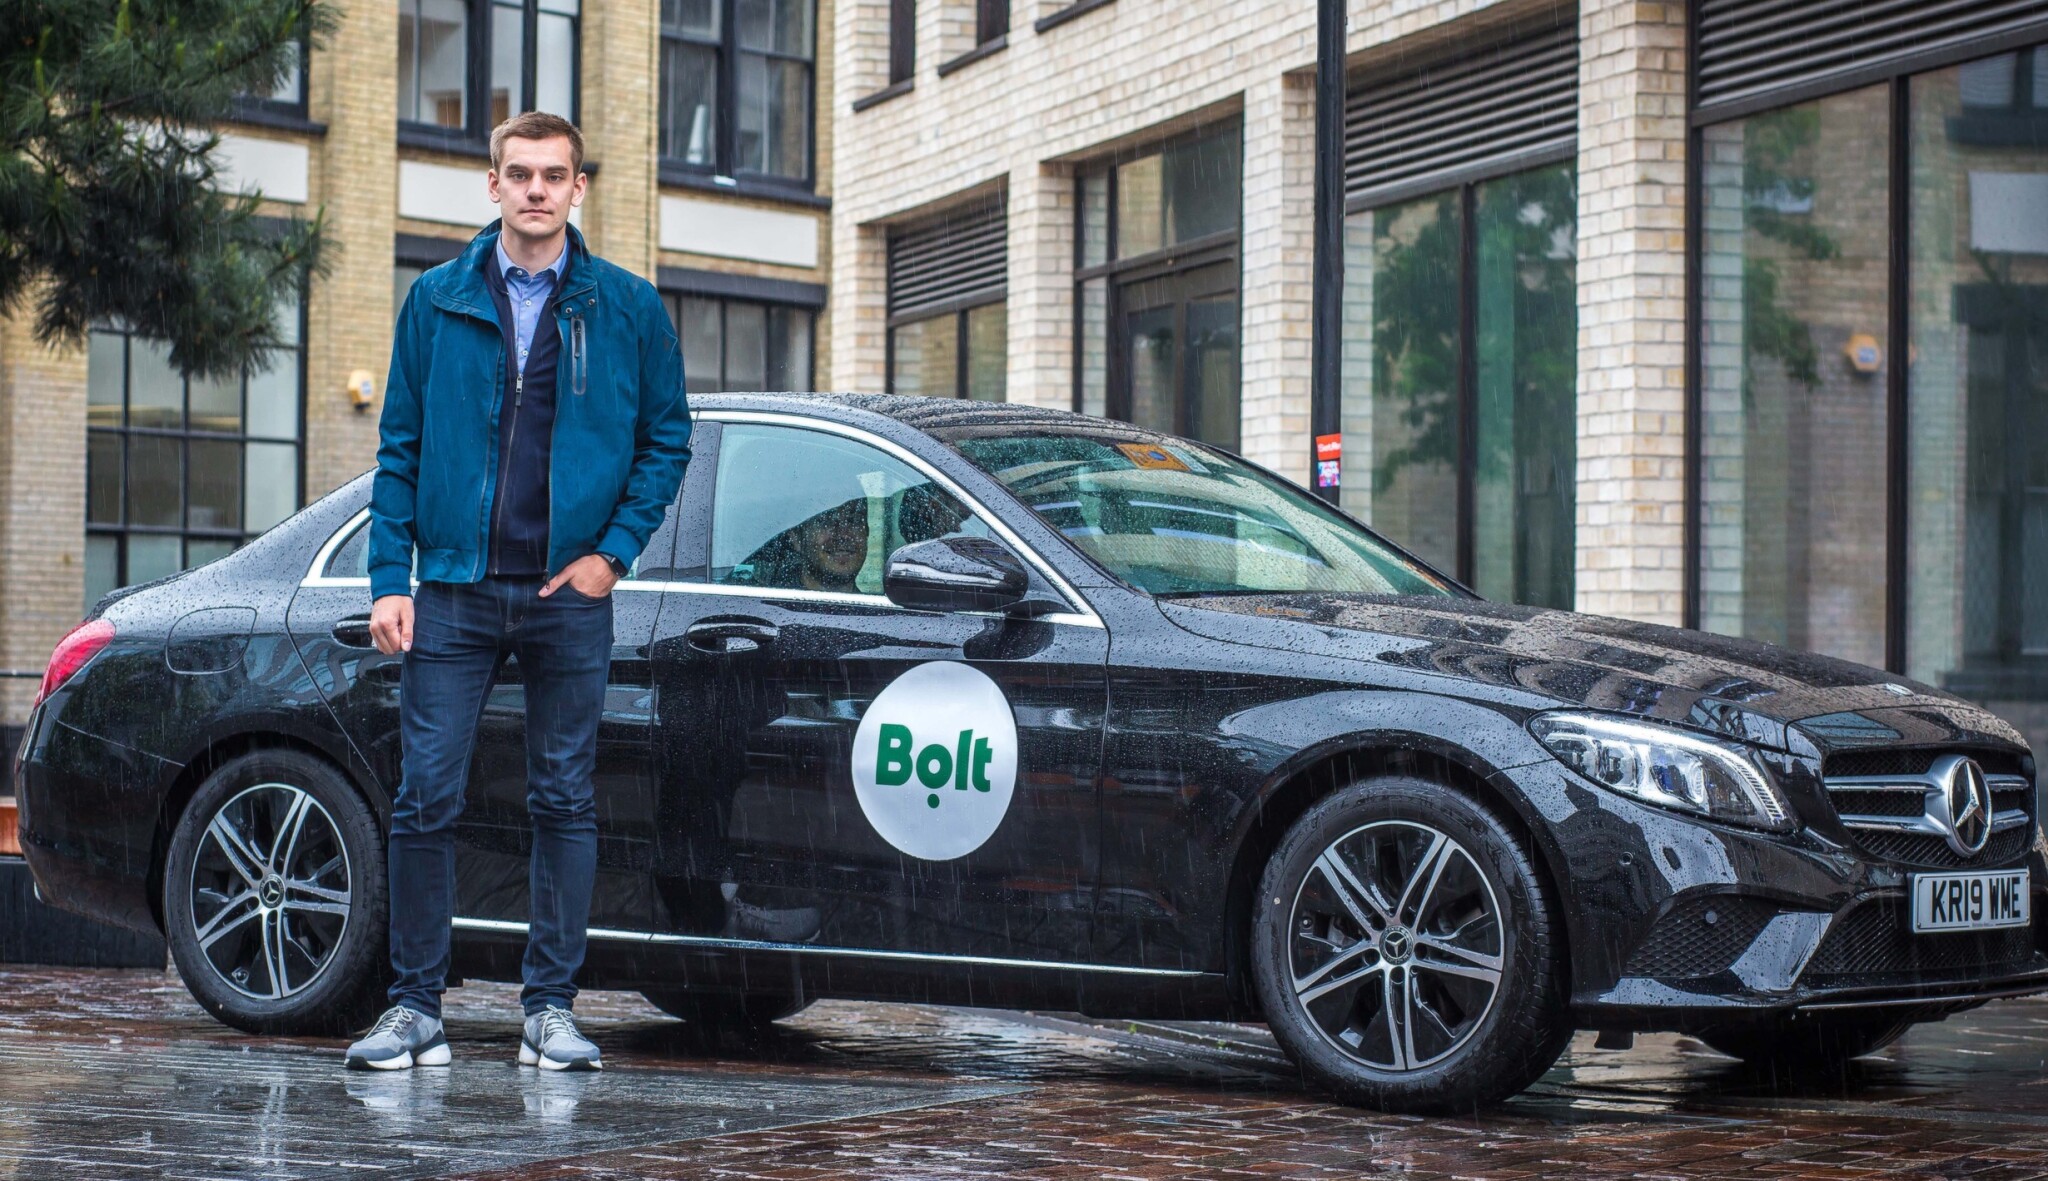 Uber propouští, Bolt hlásí investici. Estonský jednorožec získává 2,7 miliardy korun